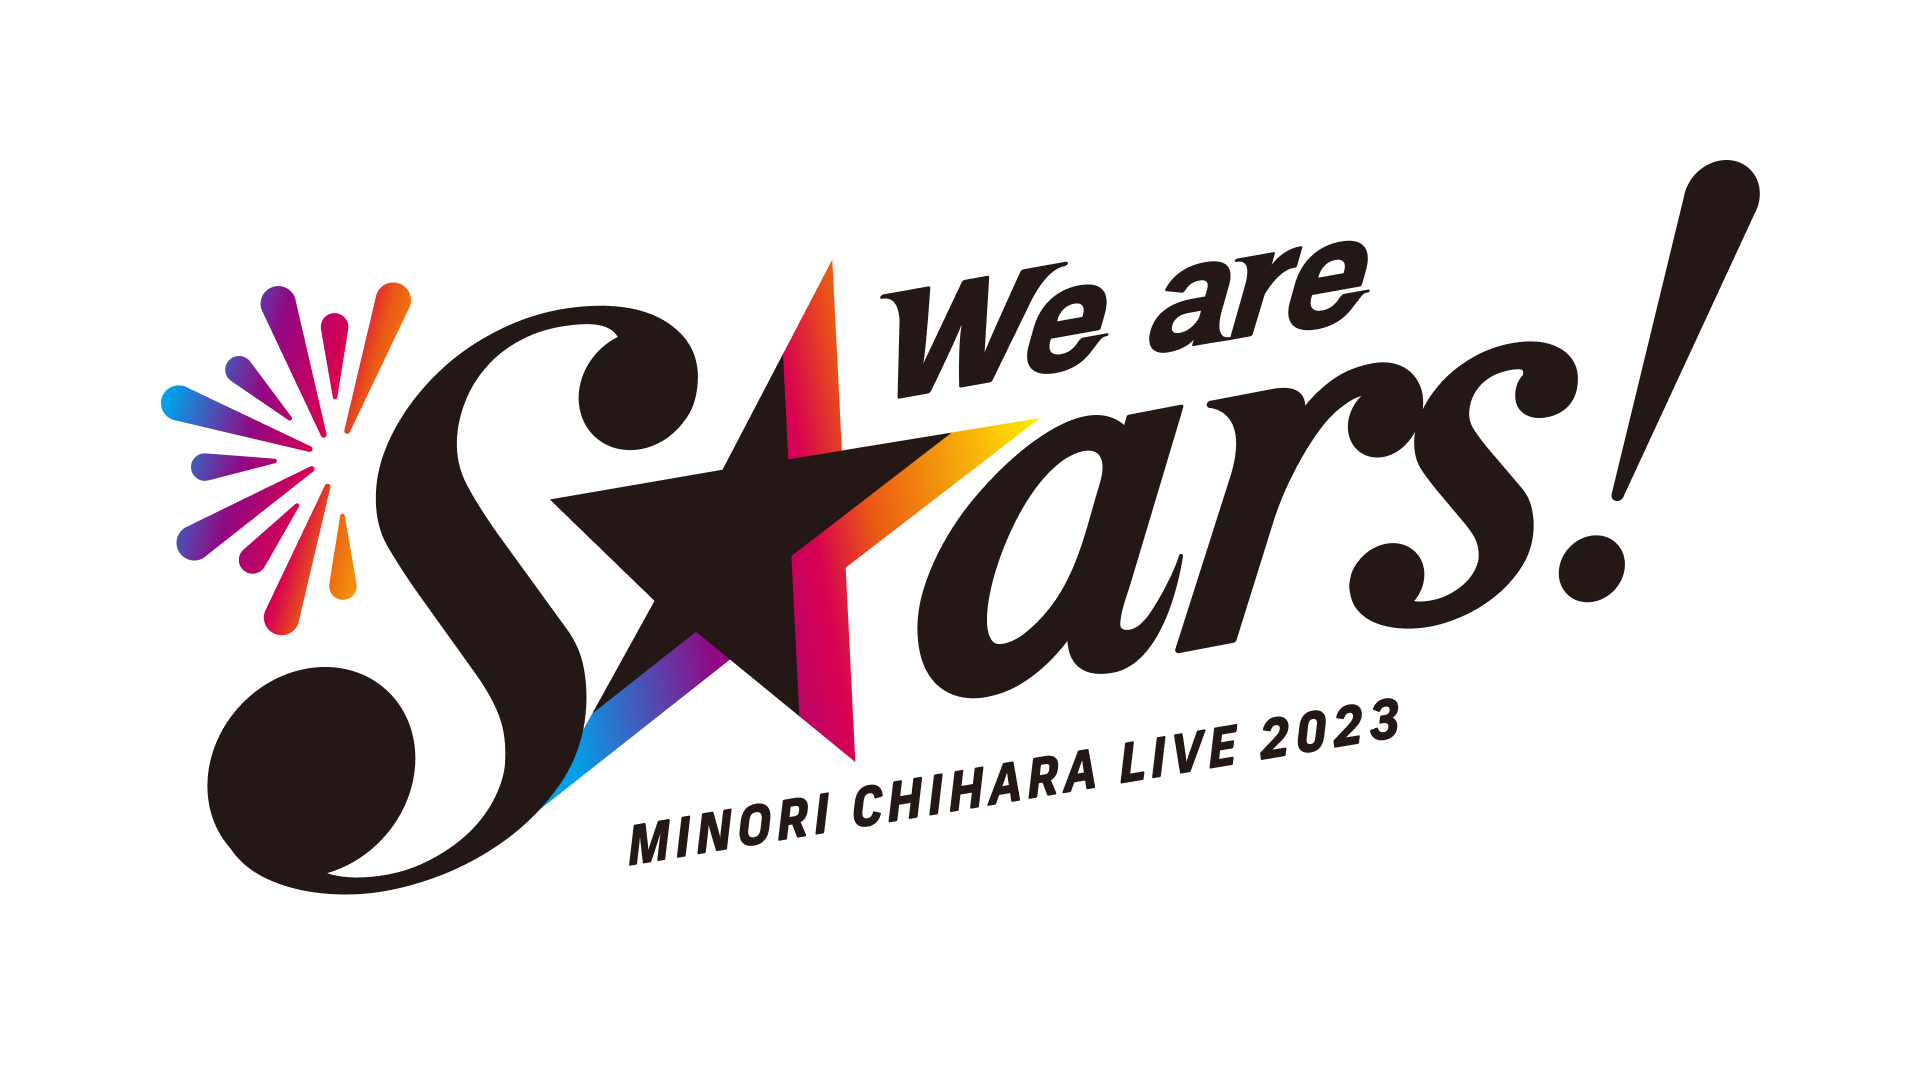 【重要】『茅原実里 LIVE 2023 "We are stars!"』会場変更のお知らせ